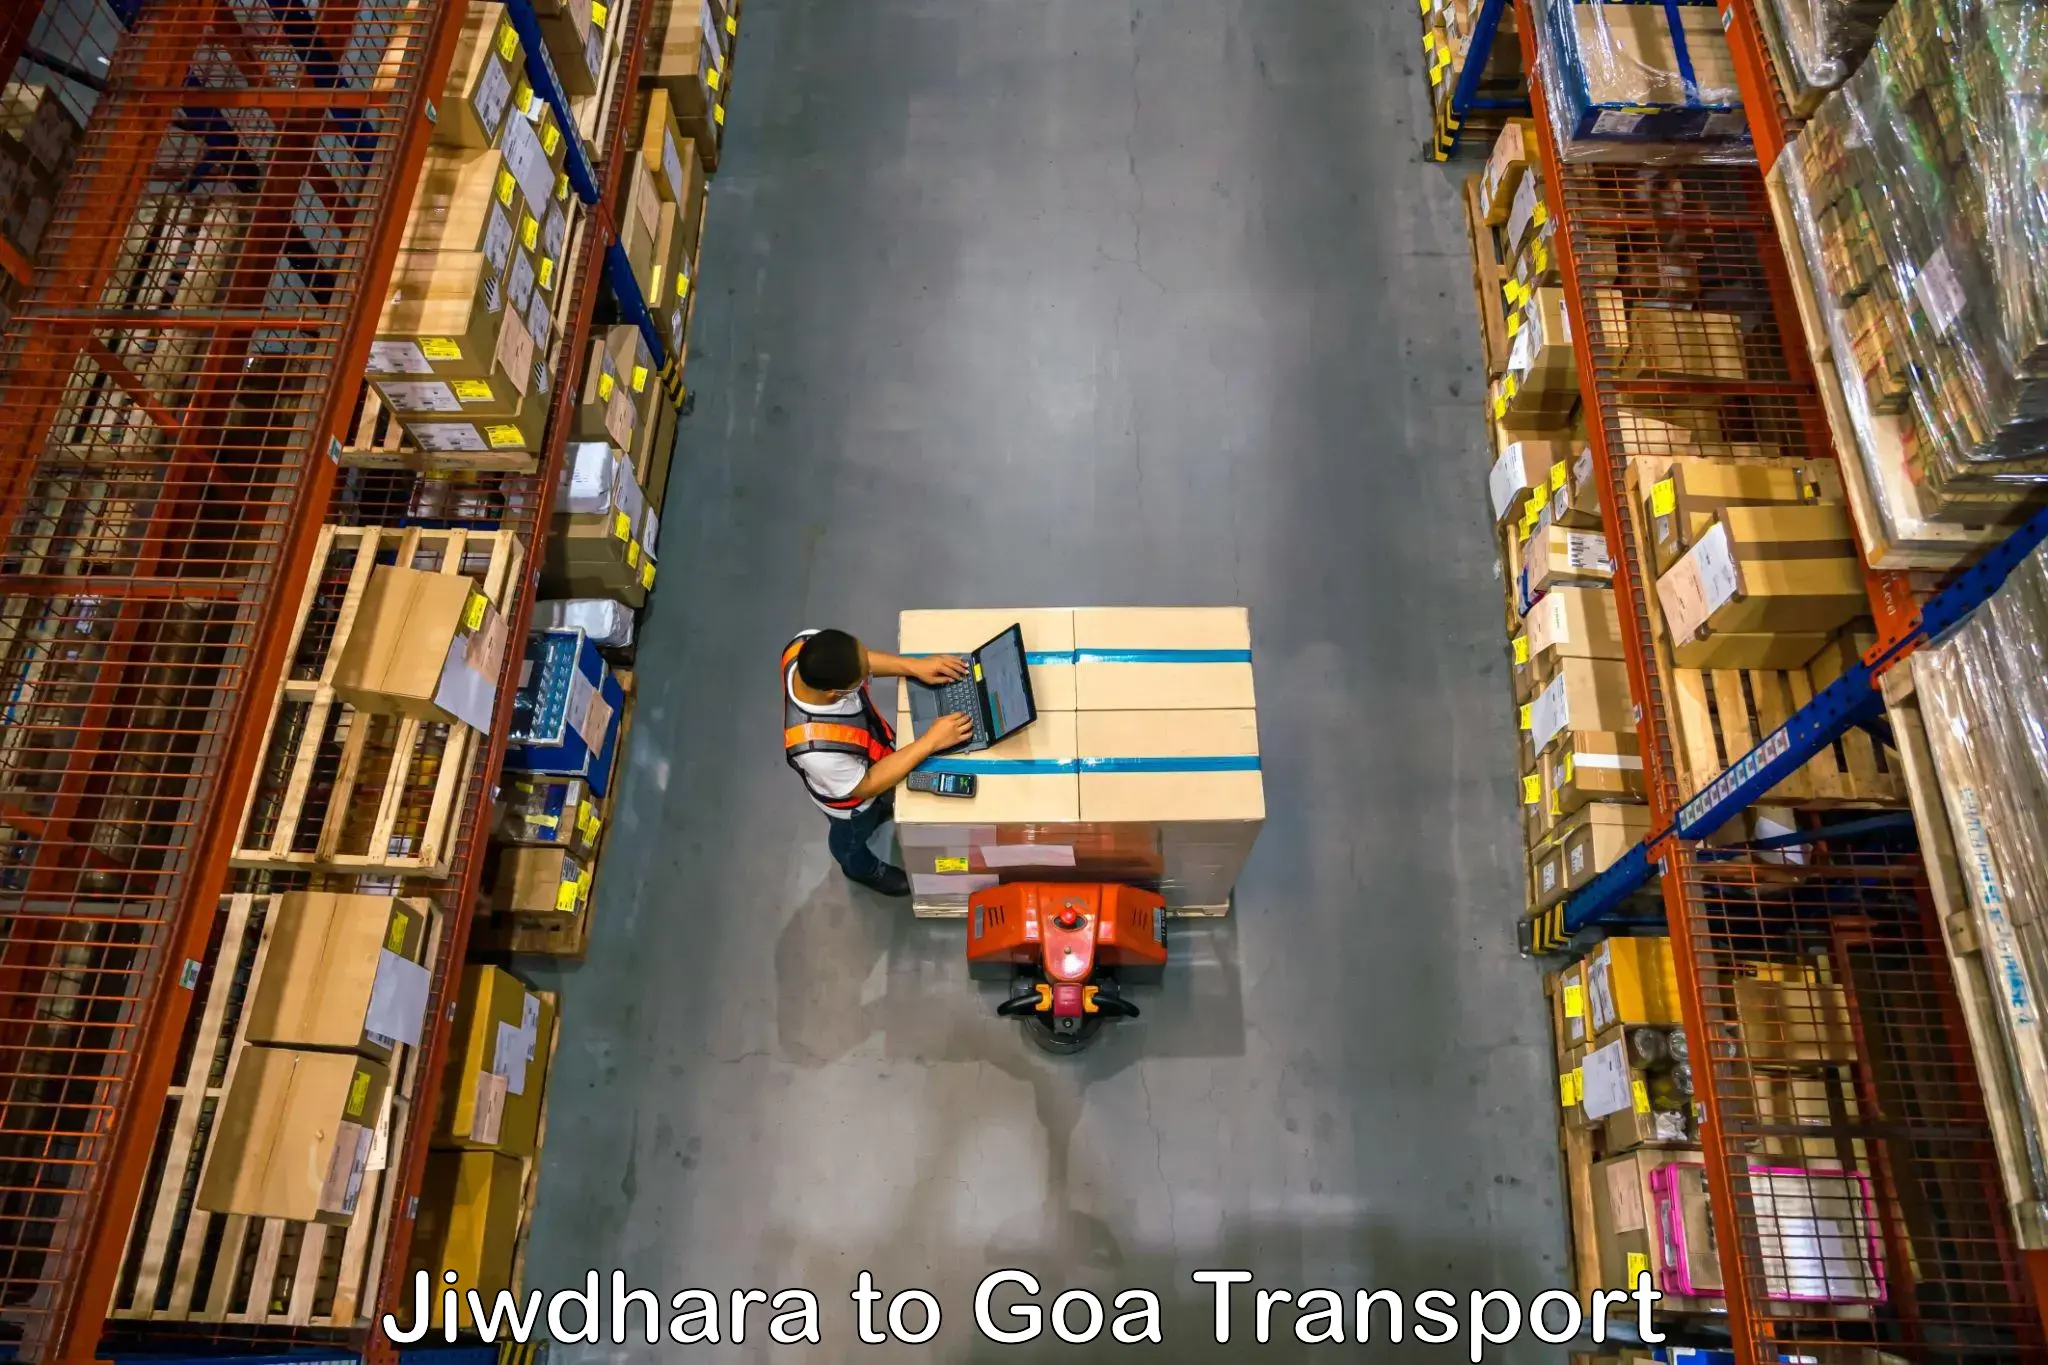 Daily transport service Jiwdhara to Mormugao Port